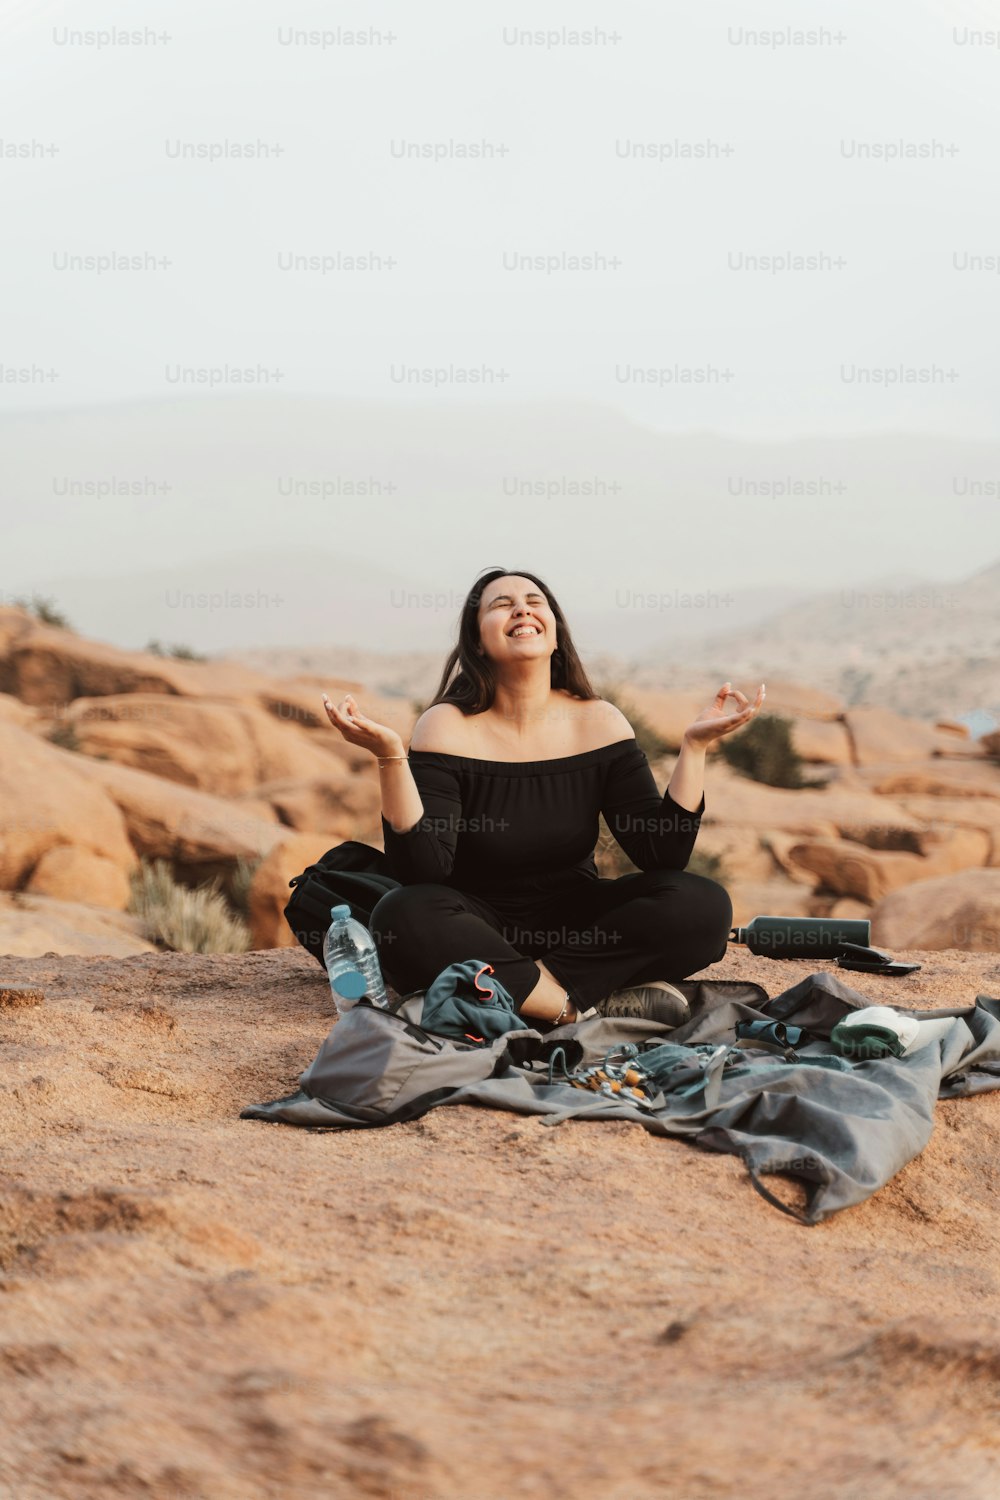 검은 상의를 입은 여자가 사막에서 담요 위에 앉아 있다